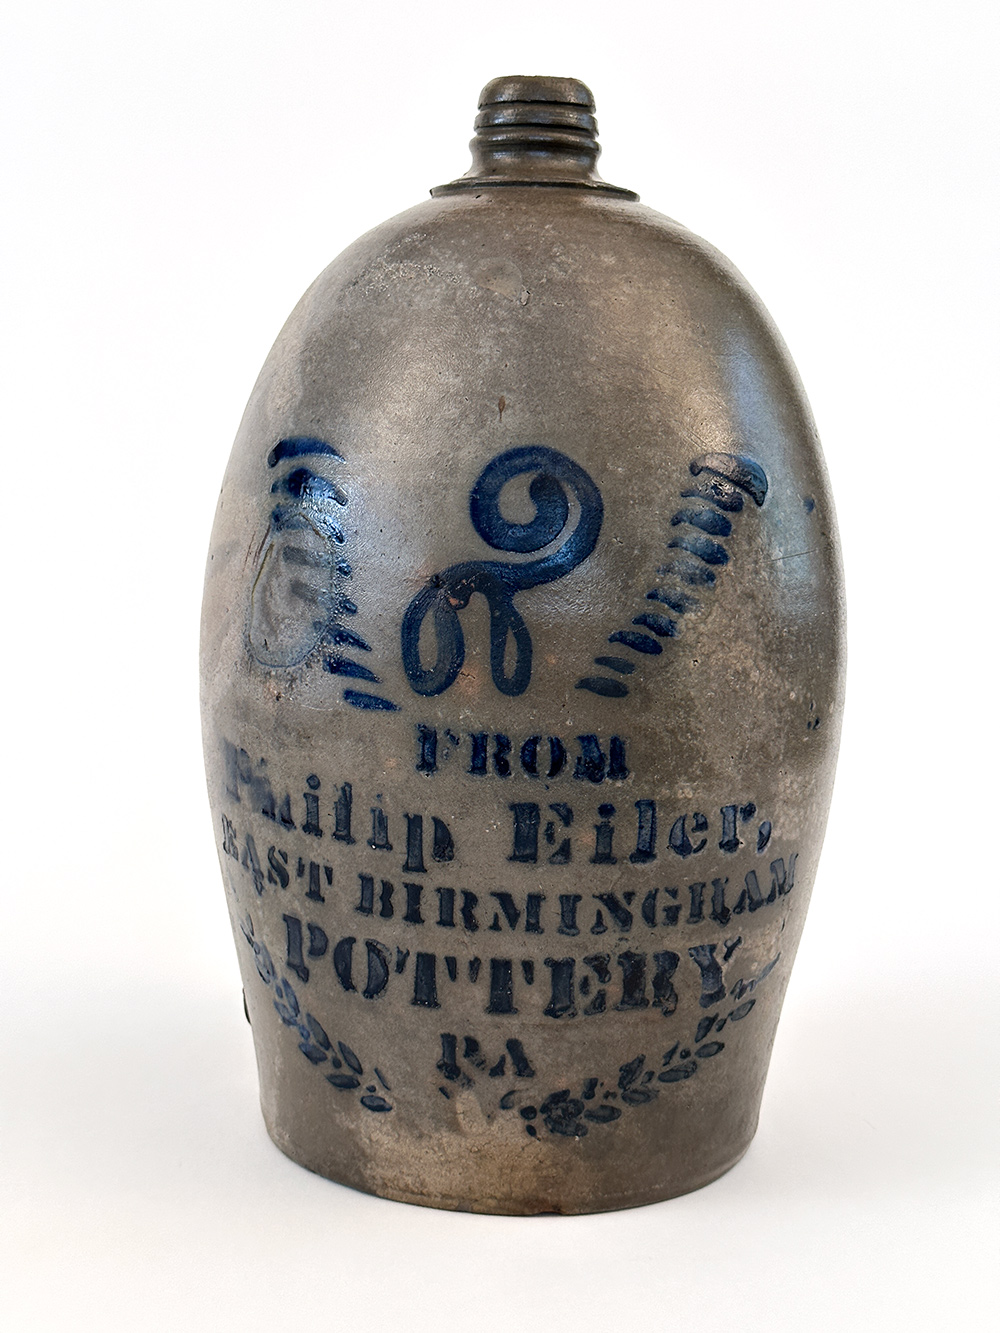 Rare antique blue decorated philip eiler stoneware jug from pennsylvania